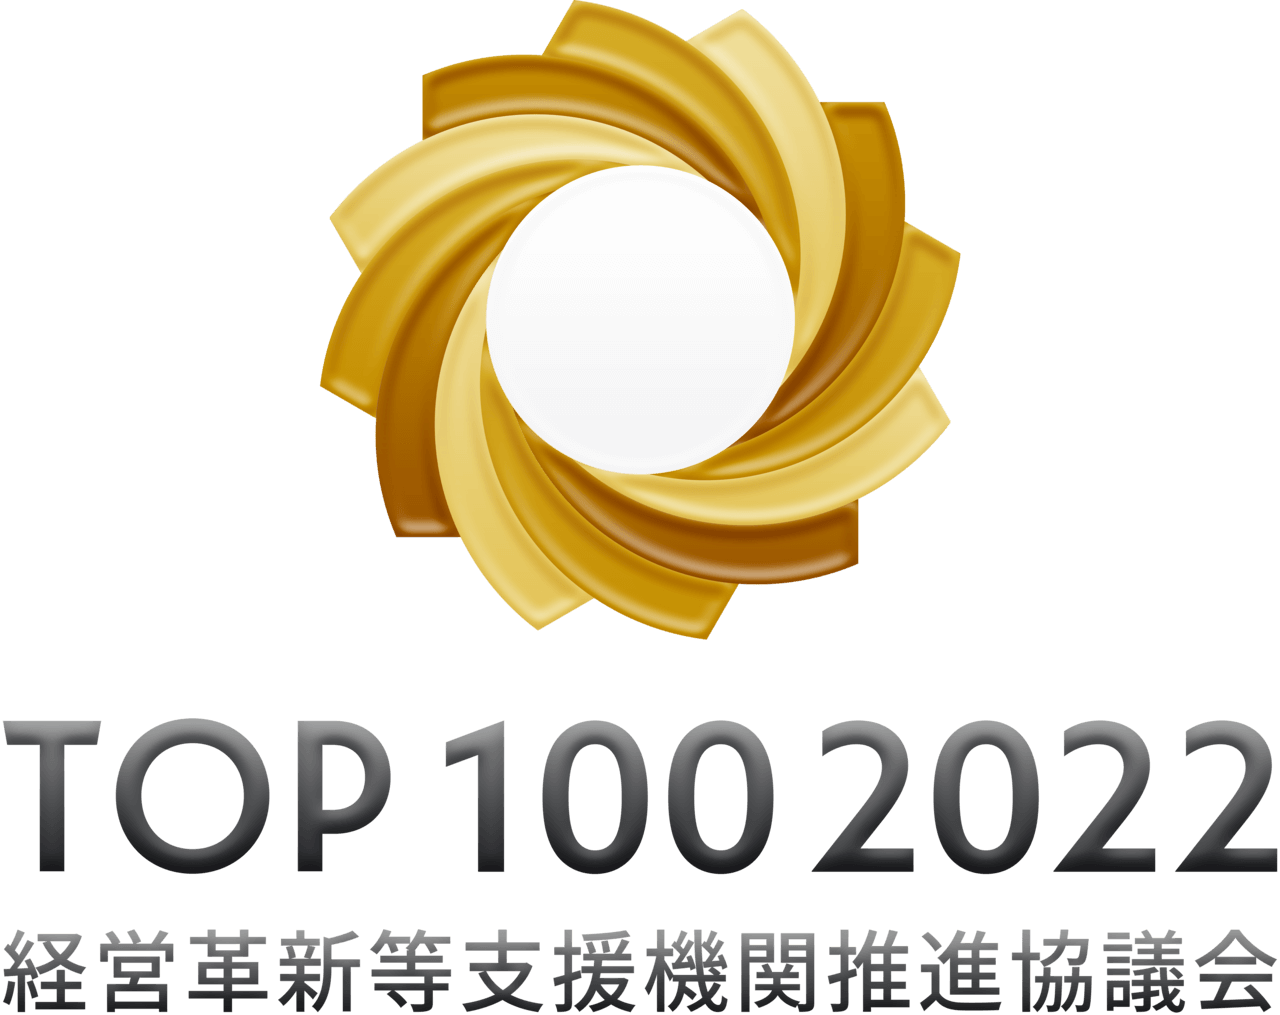 経営革新等支援機関推進協議会2022年TOP100事務所